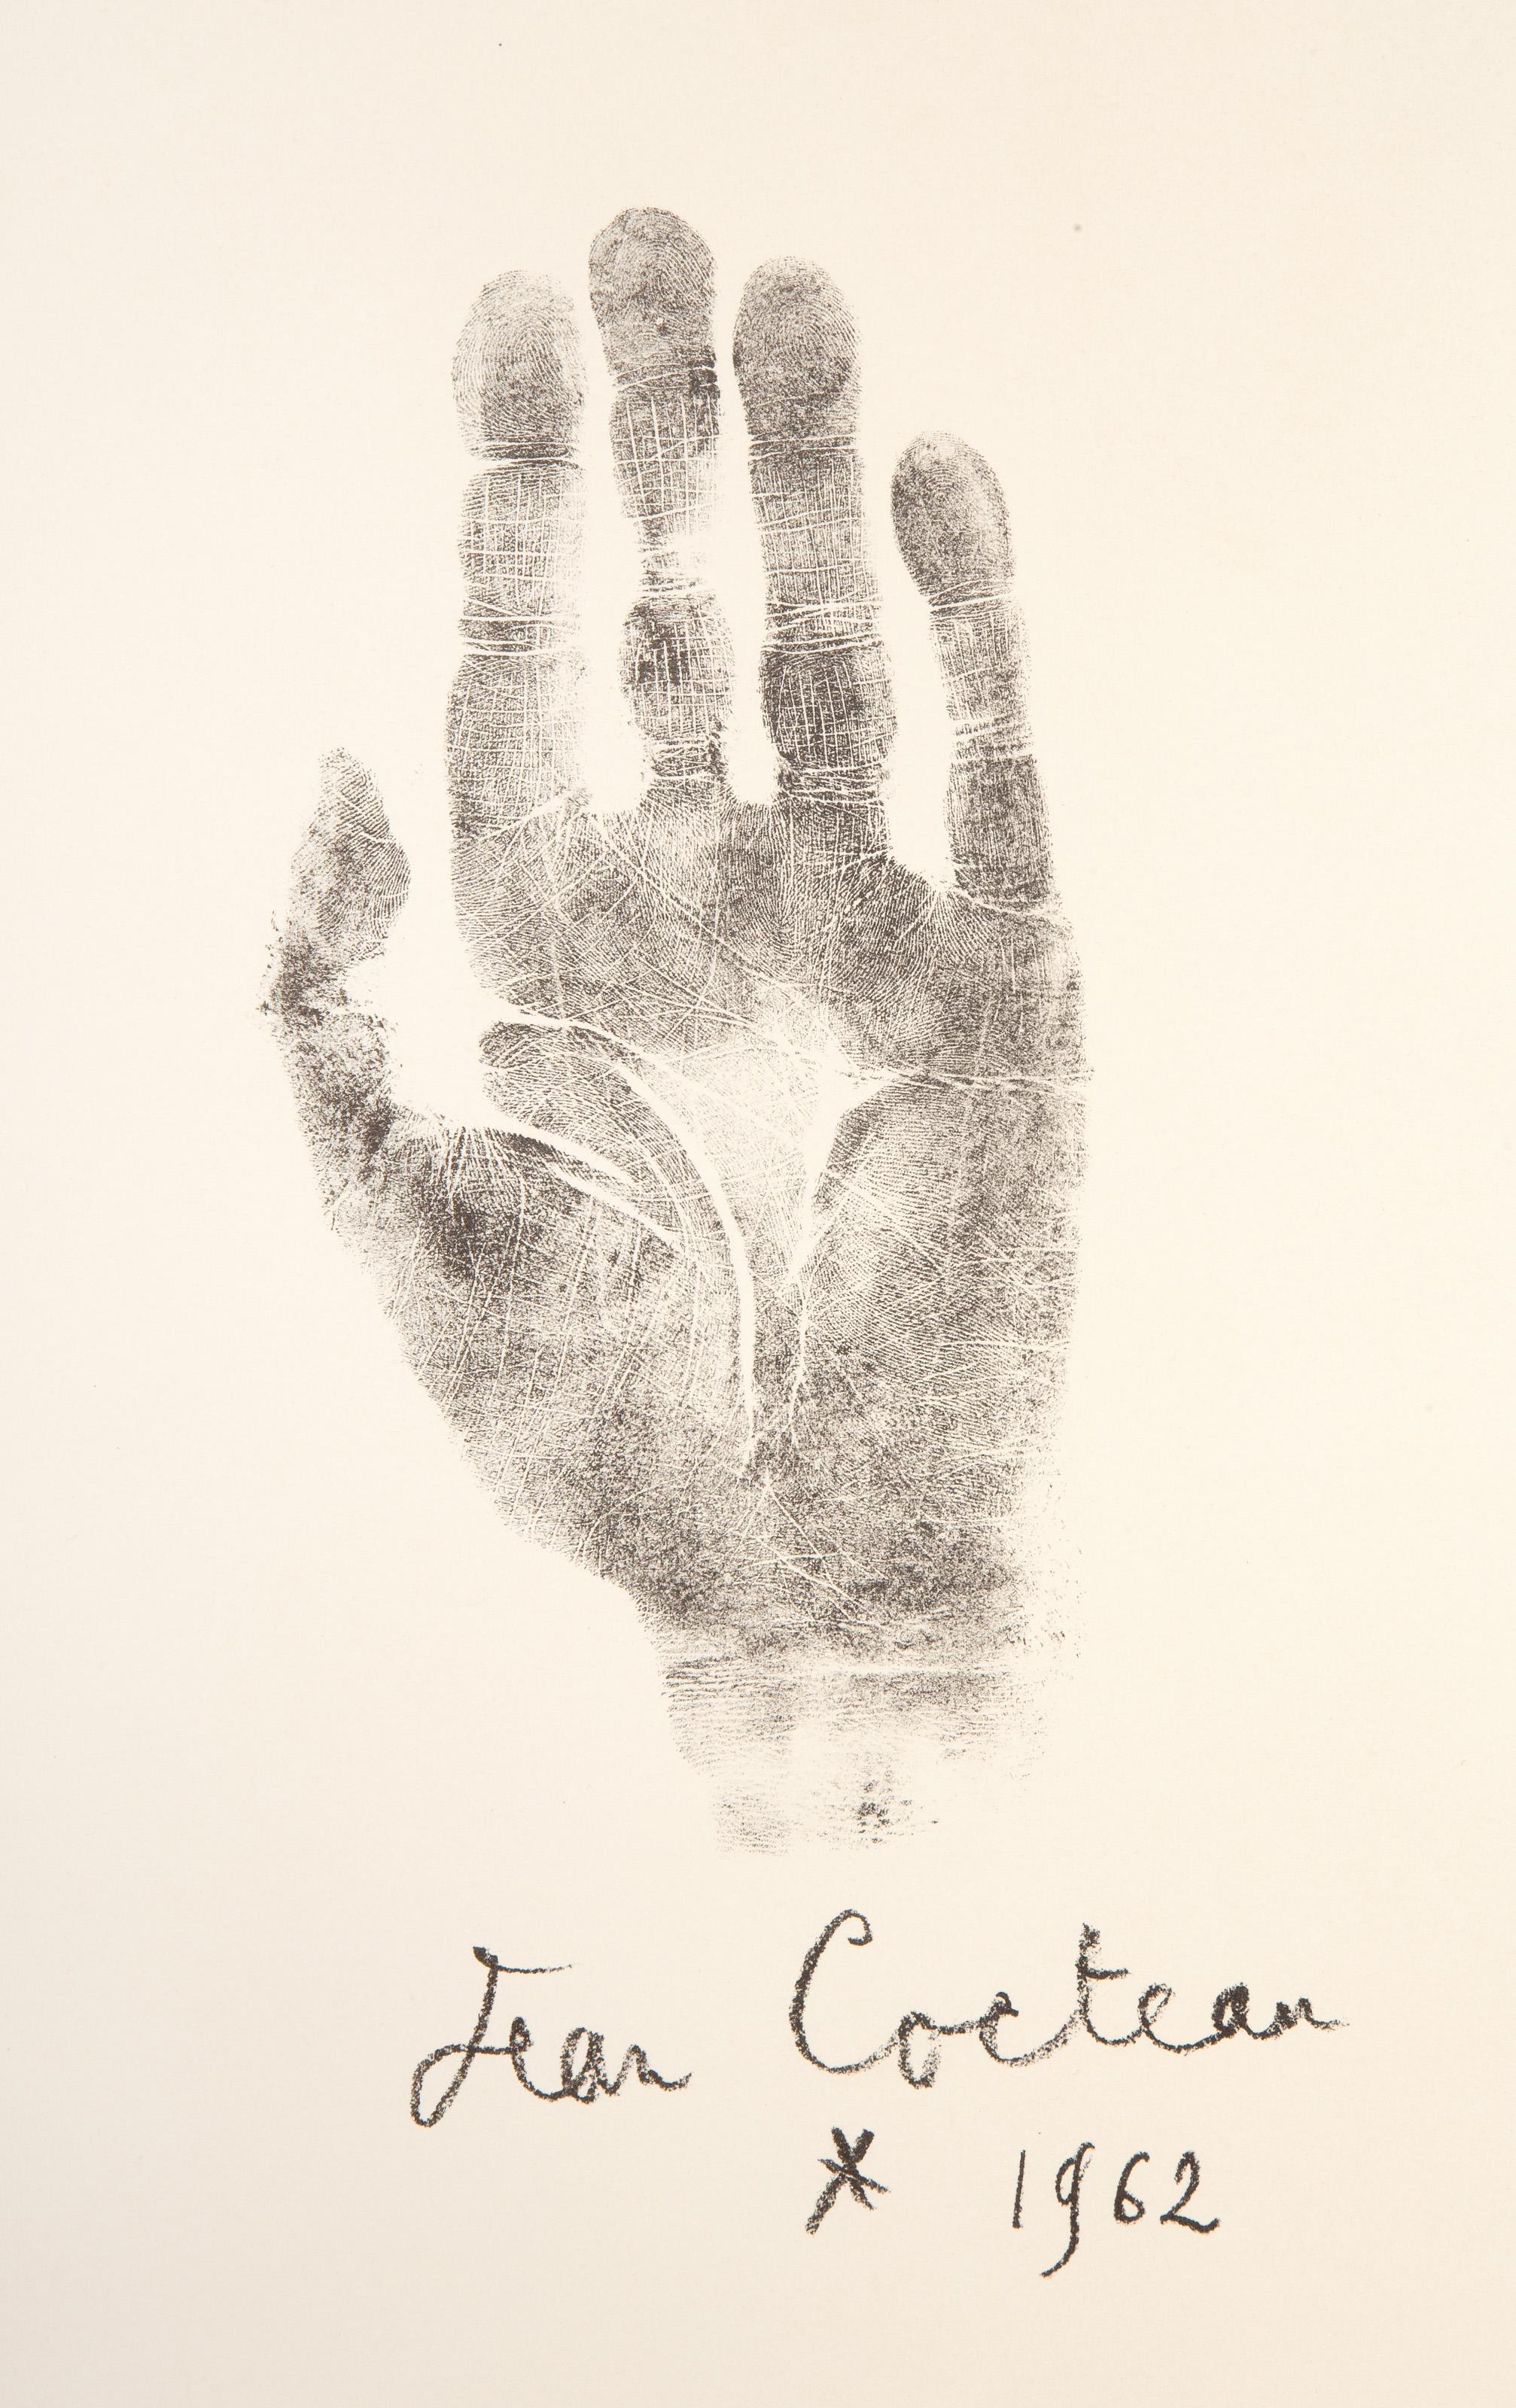 Empreinte. La main droite de Jean Cocteau, Lithograph by Jean Cocteau